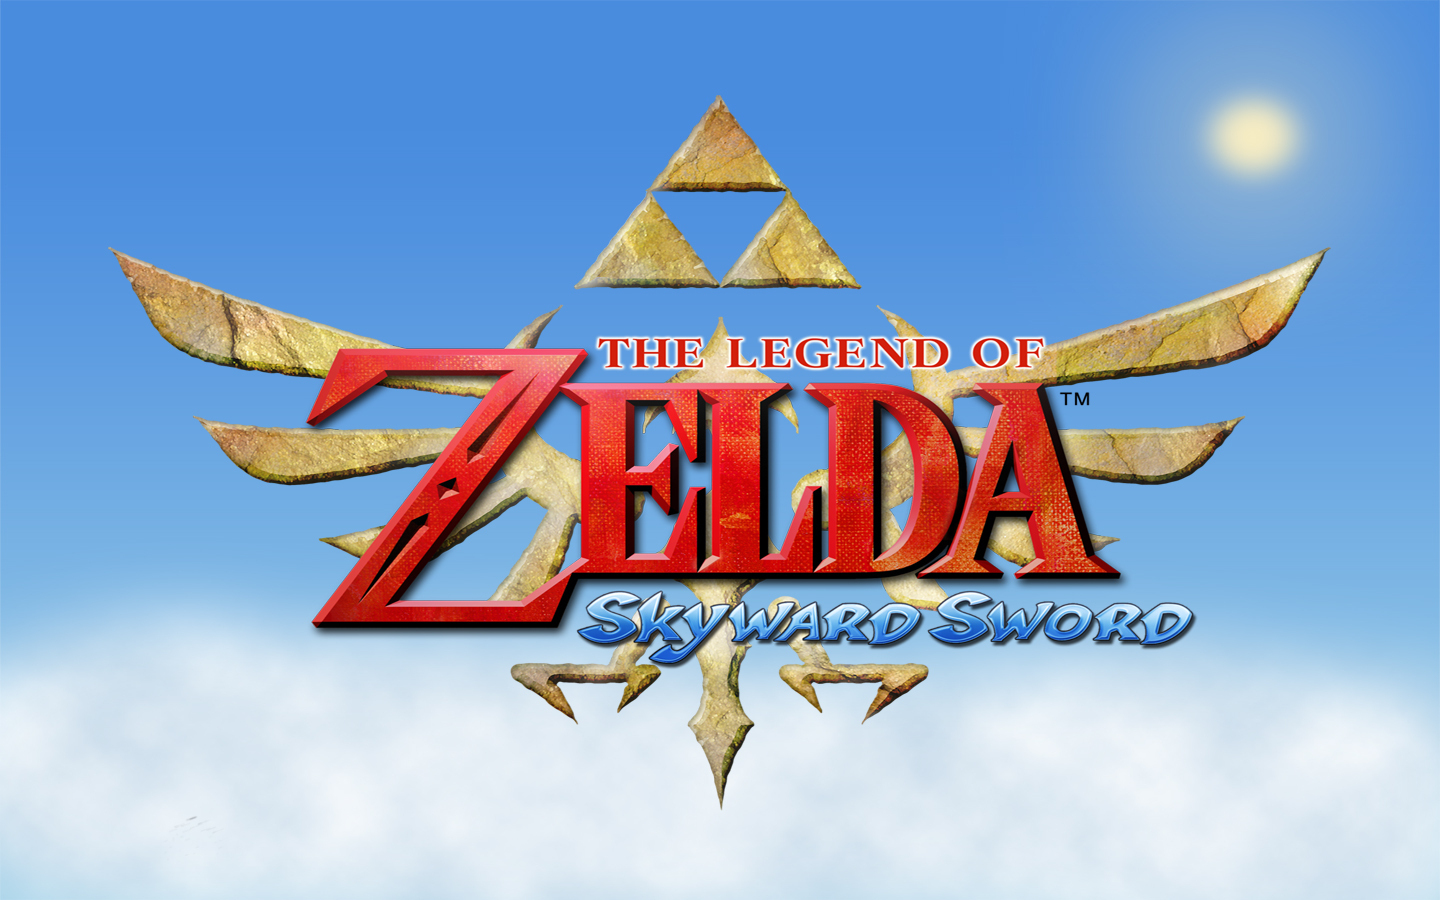 The Legend Of Zelda - Legend Of Zelda Skyward Sword Title - HD Wallpaper 